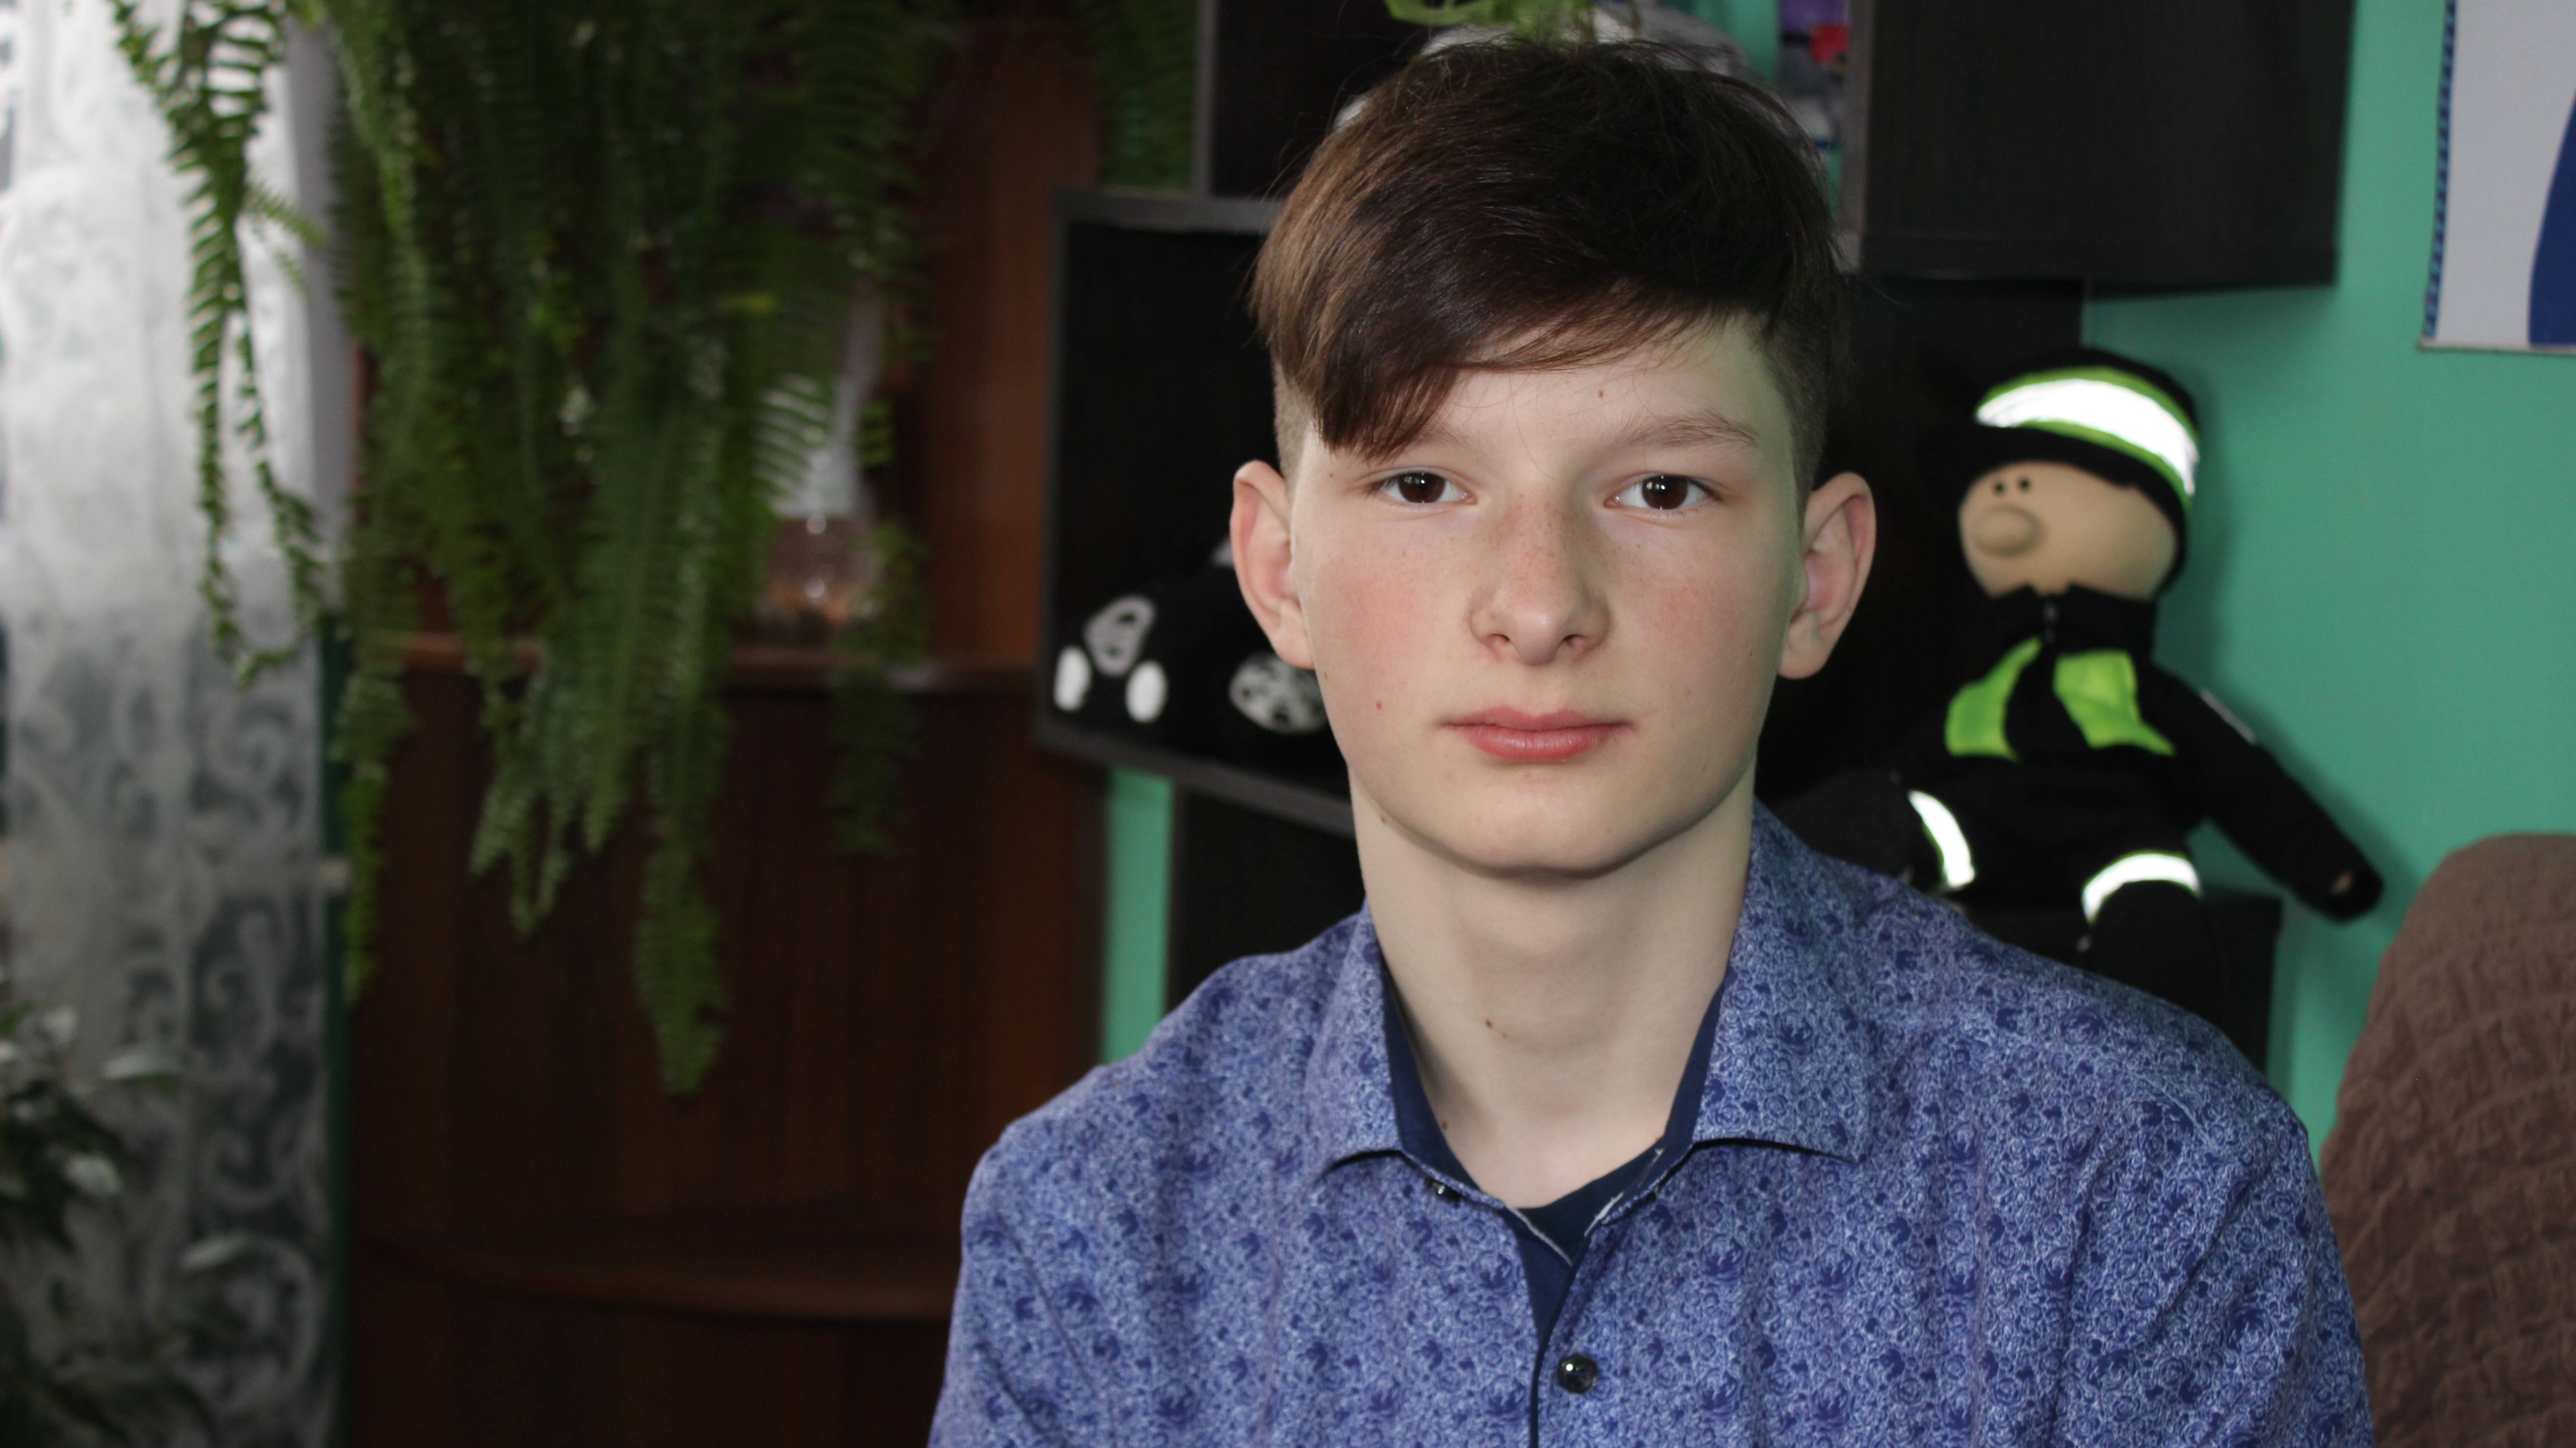 Иван, 14 лет (видео-анкета)